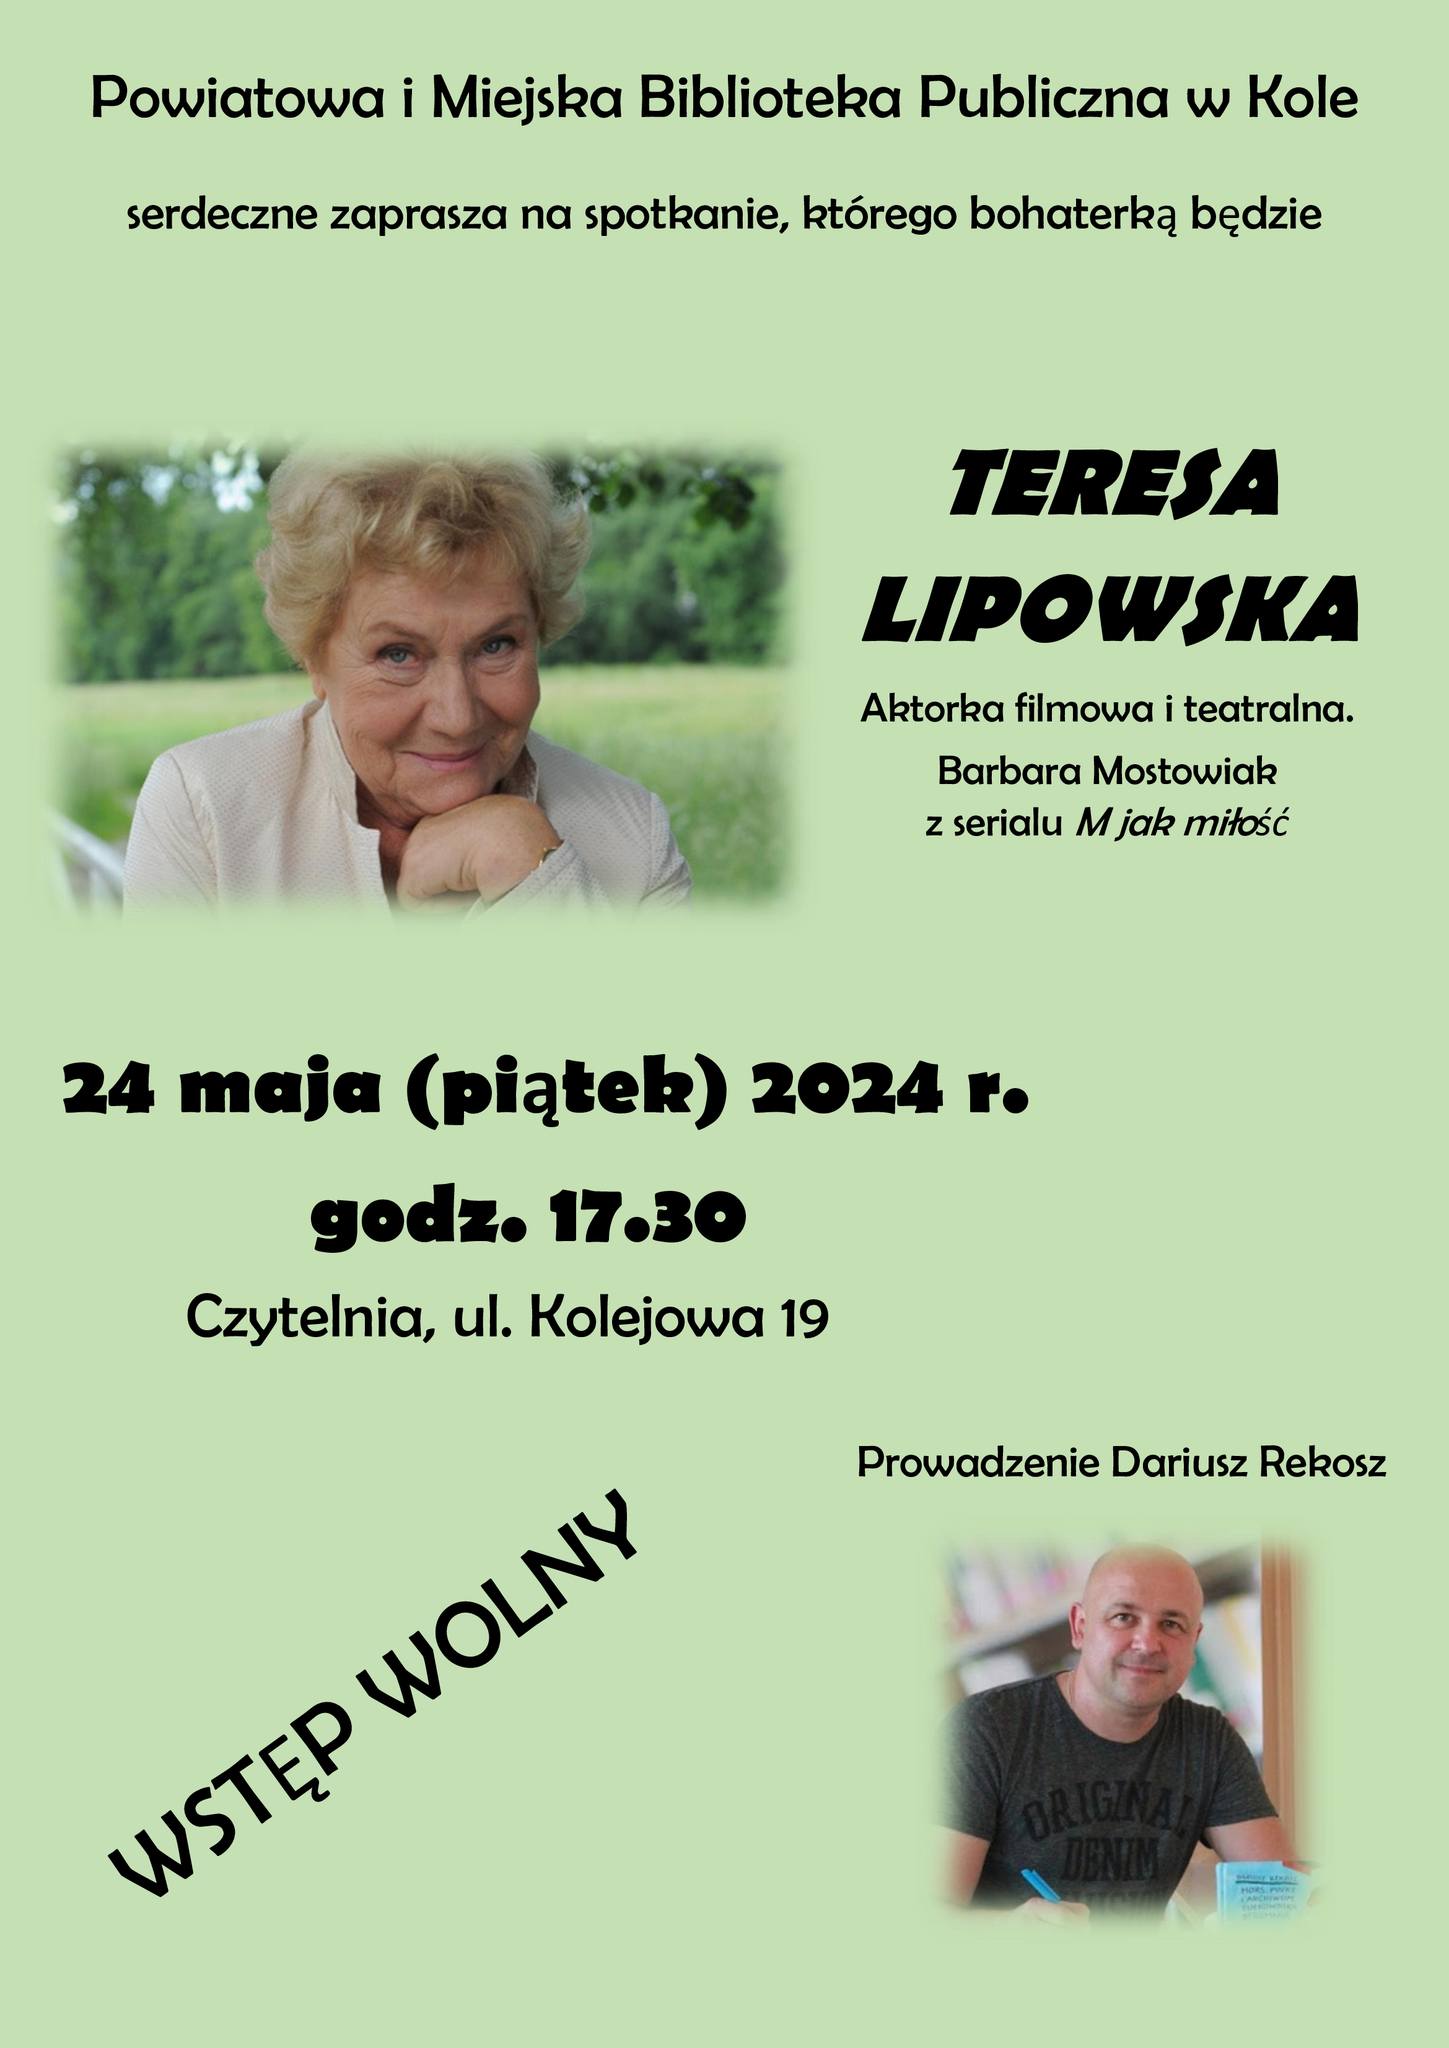 Spotkanie z aktorką filmową i teatralną Teresą Lipowską